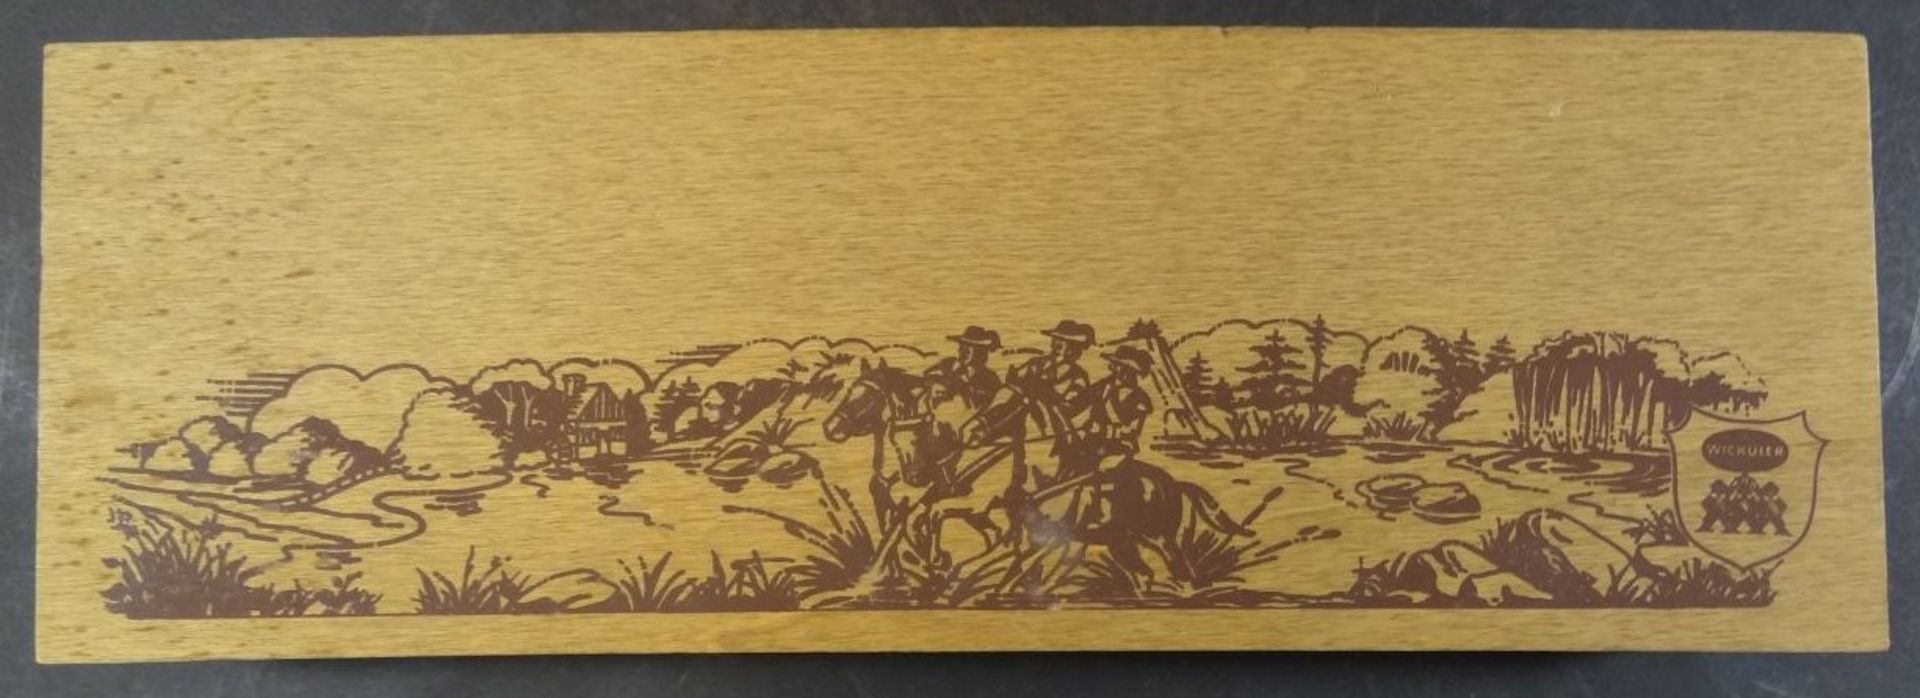 jagdliches Tranchierbesteck in Kasten, Wicküler, sehr gut erhalten, L-32 cm, Hirschhorngriffe, - Bild 5 aus 5